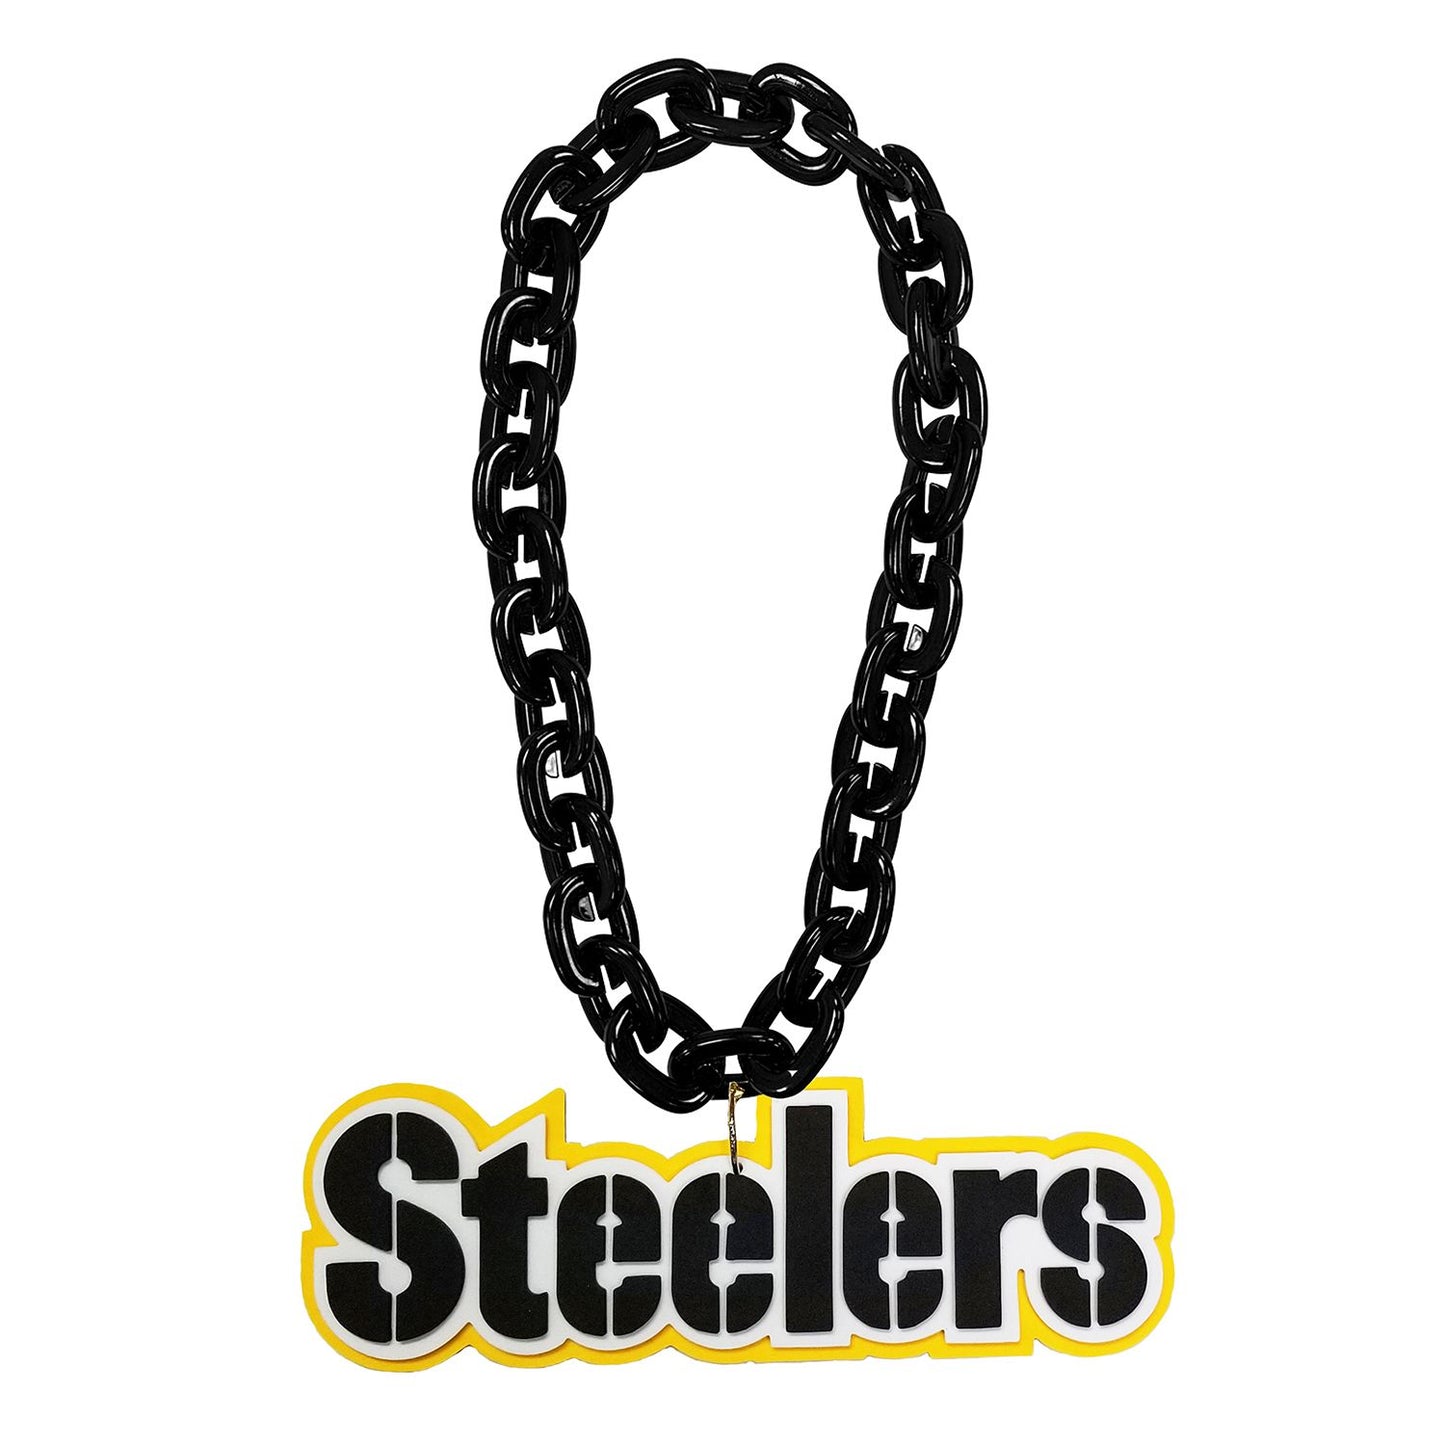 Pittsburgh Steelers Aminco Foam Fan Chain- Black